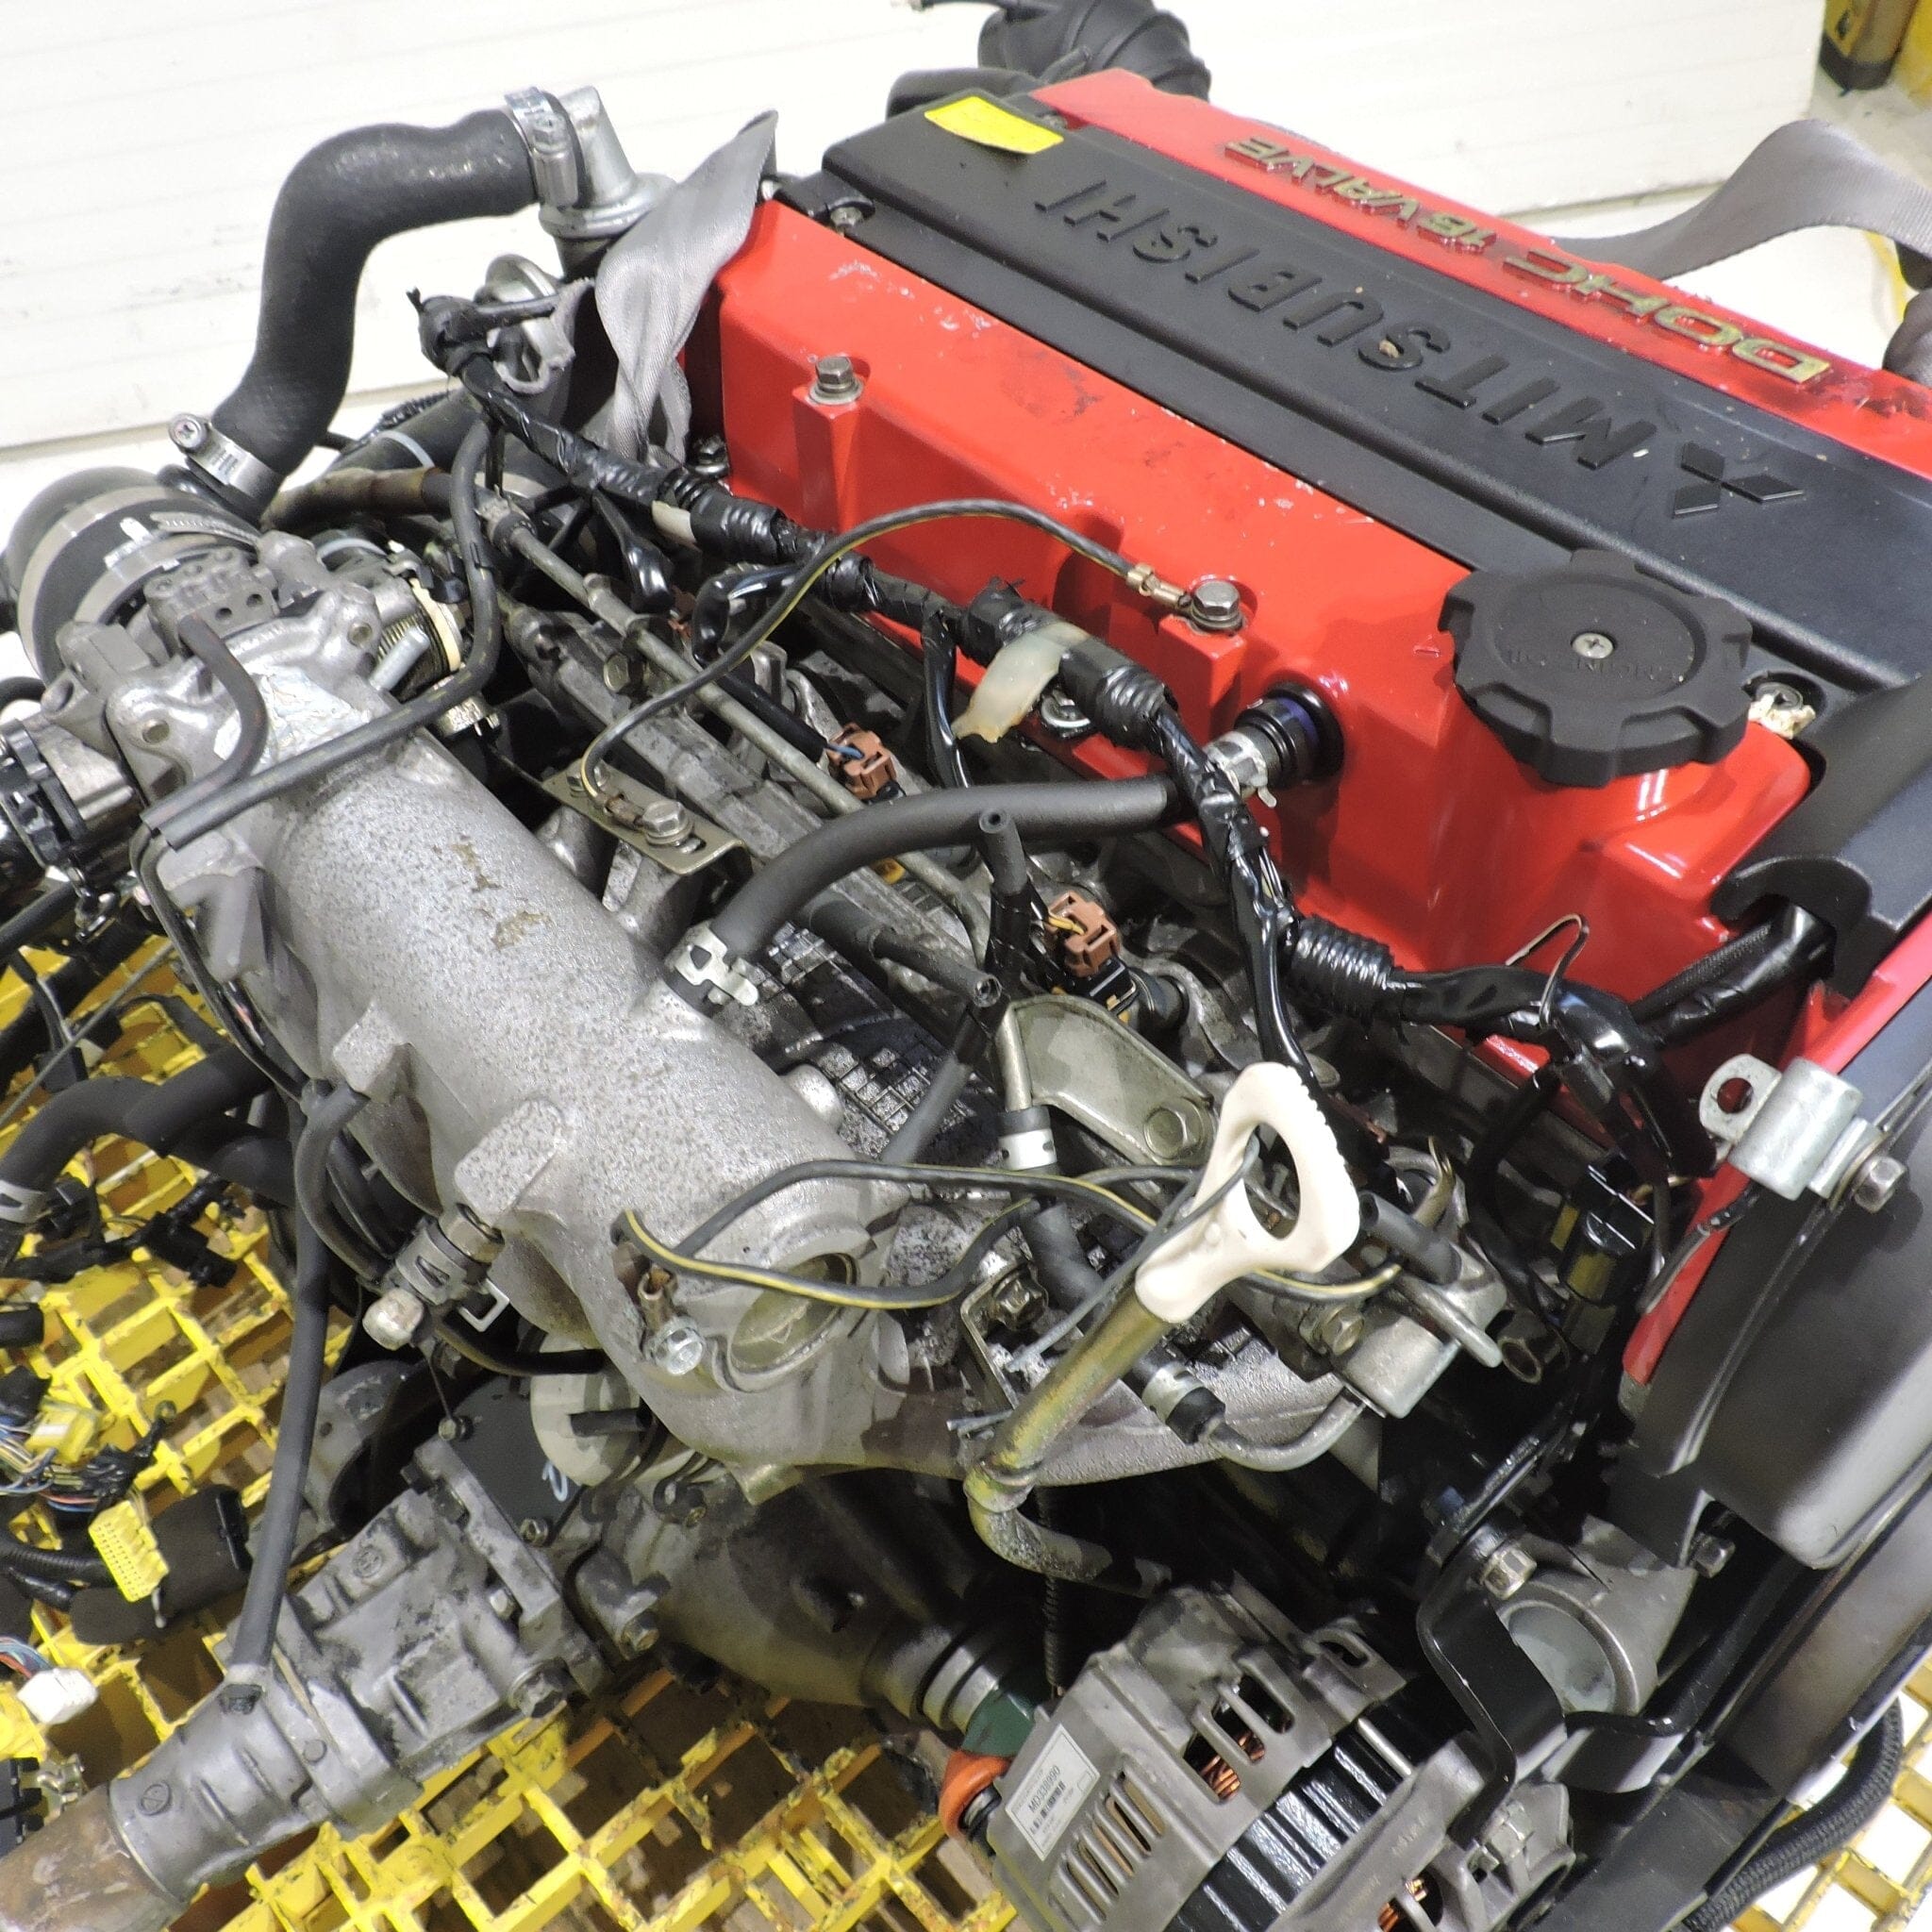 Mitsubishi Lancer Evolution 4 IV Turbo 2.0L JDM Engine Transmission Manual Swap - 4G63 CN9a